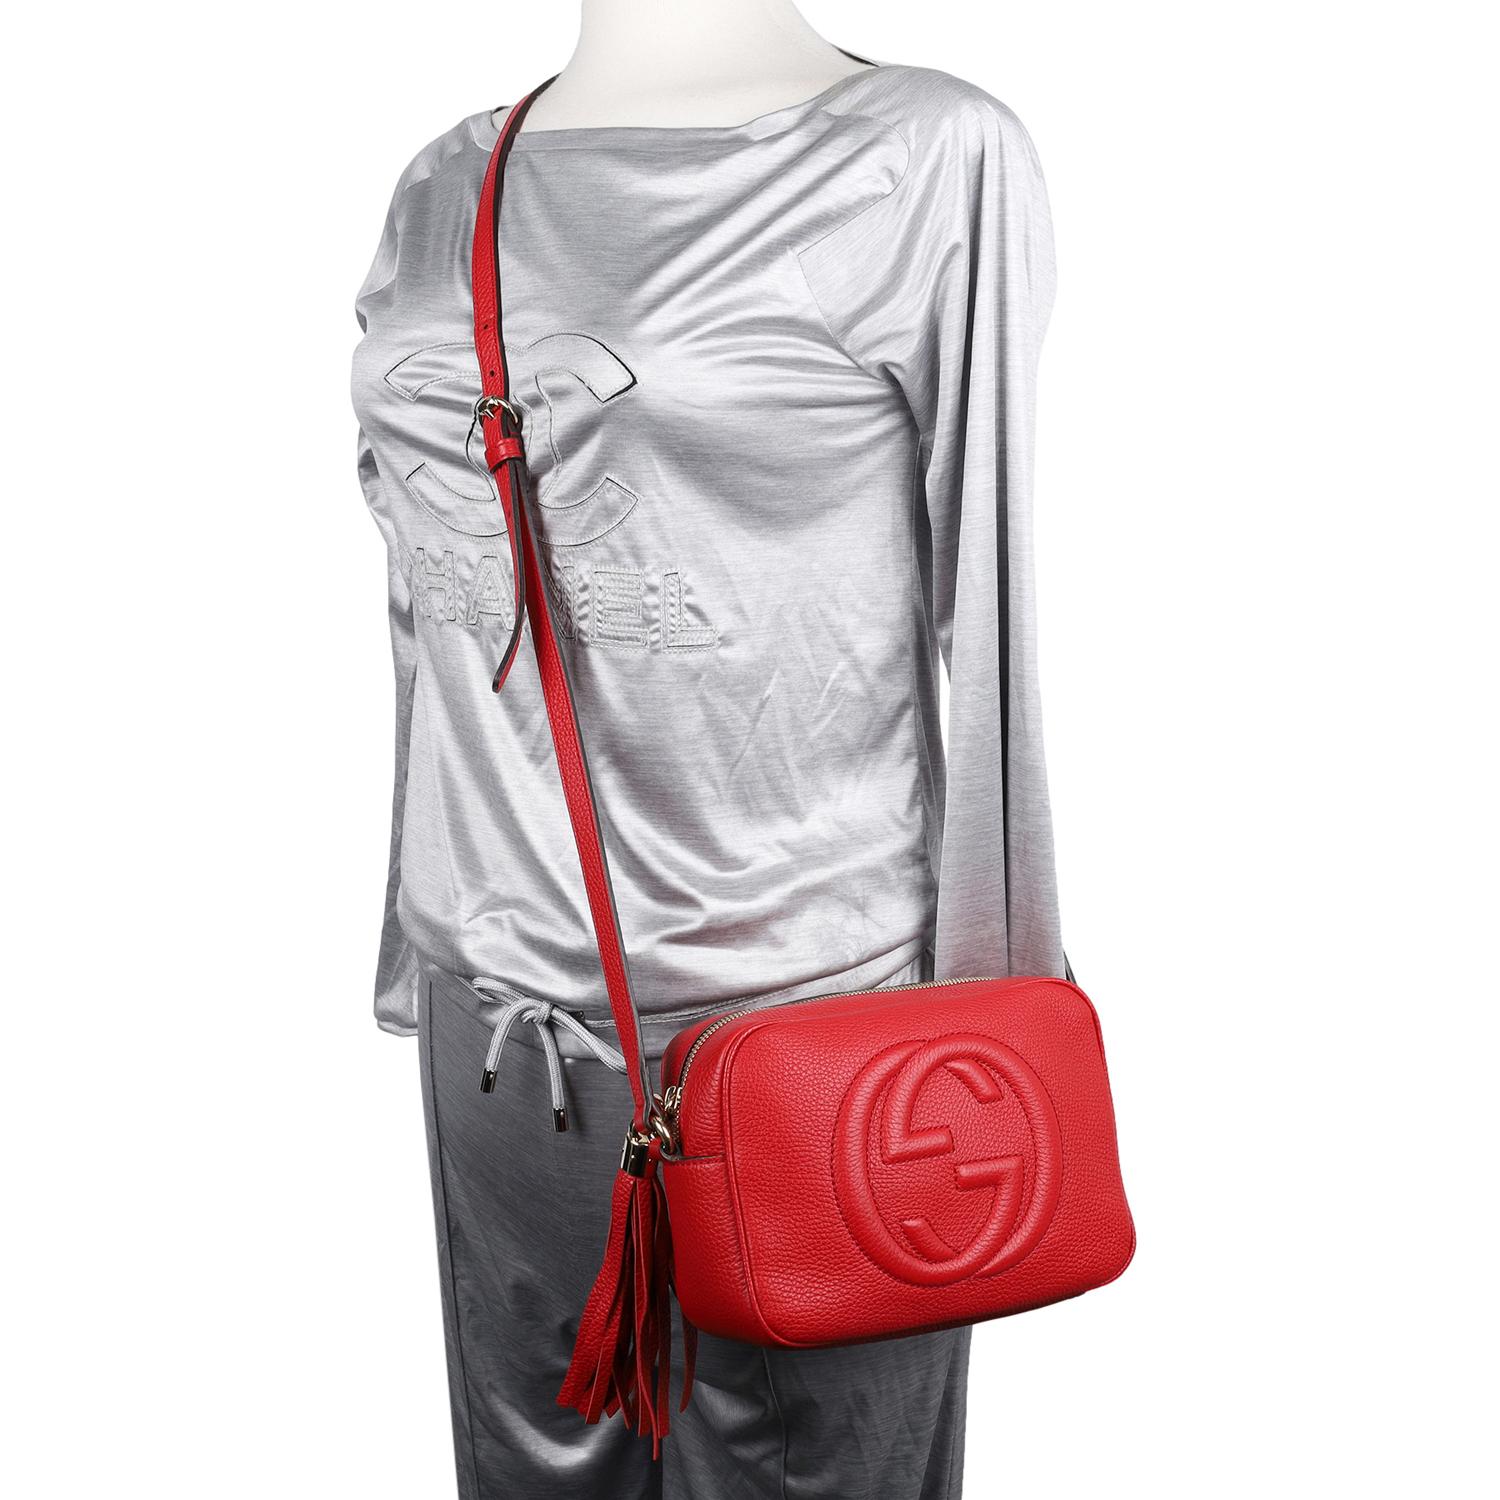 Authentische, gebrauchte Gucci GG Red Soho Disco Leder Crossbody Bag. Diese klassische Gucci Crossbody Bag aus rotem Leder ist die perfekte Tasche für jeden Tag. Mit GG Logo auf der Vorderseite, Reißverschluss oben mit Fransenlasche und geräumigem